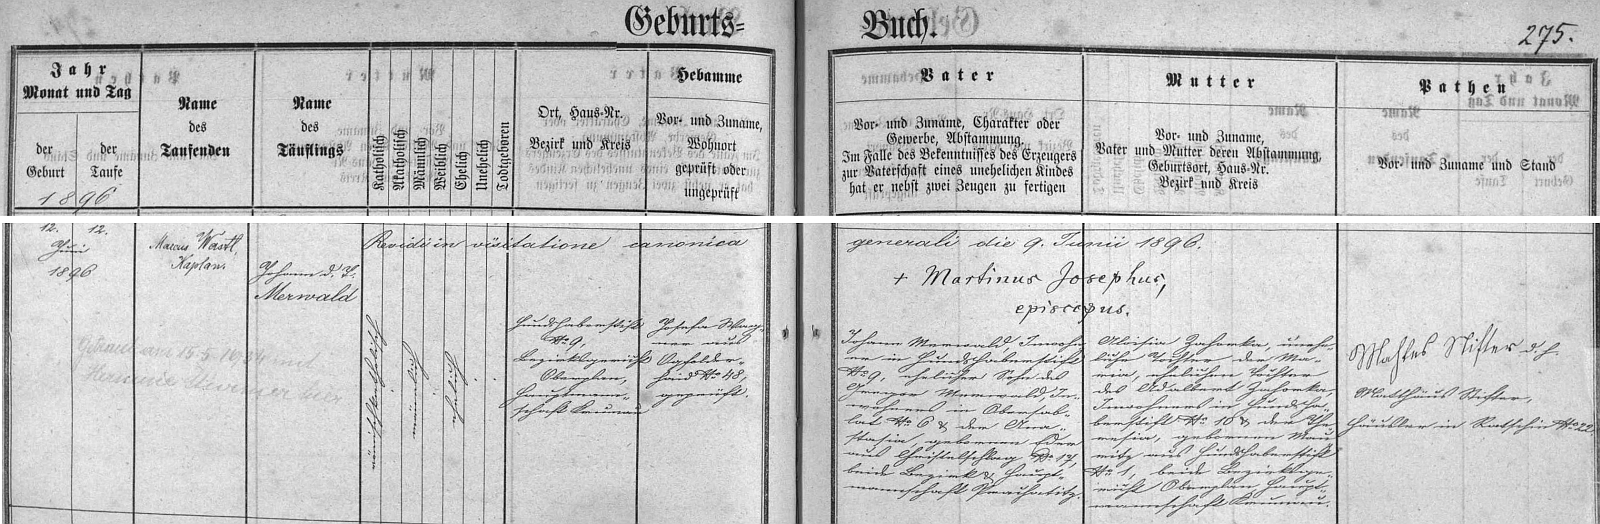 Záznam o narození Johanna Merwalda v křestní matrice farní obce Jablonec s přípisem o tamní svatbě v květnu 1934